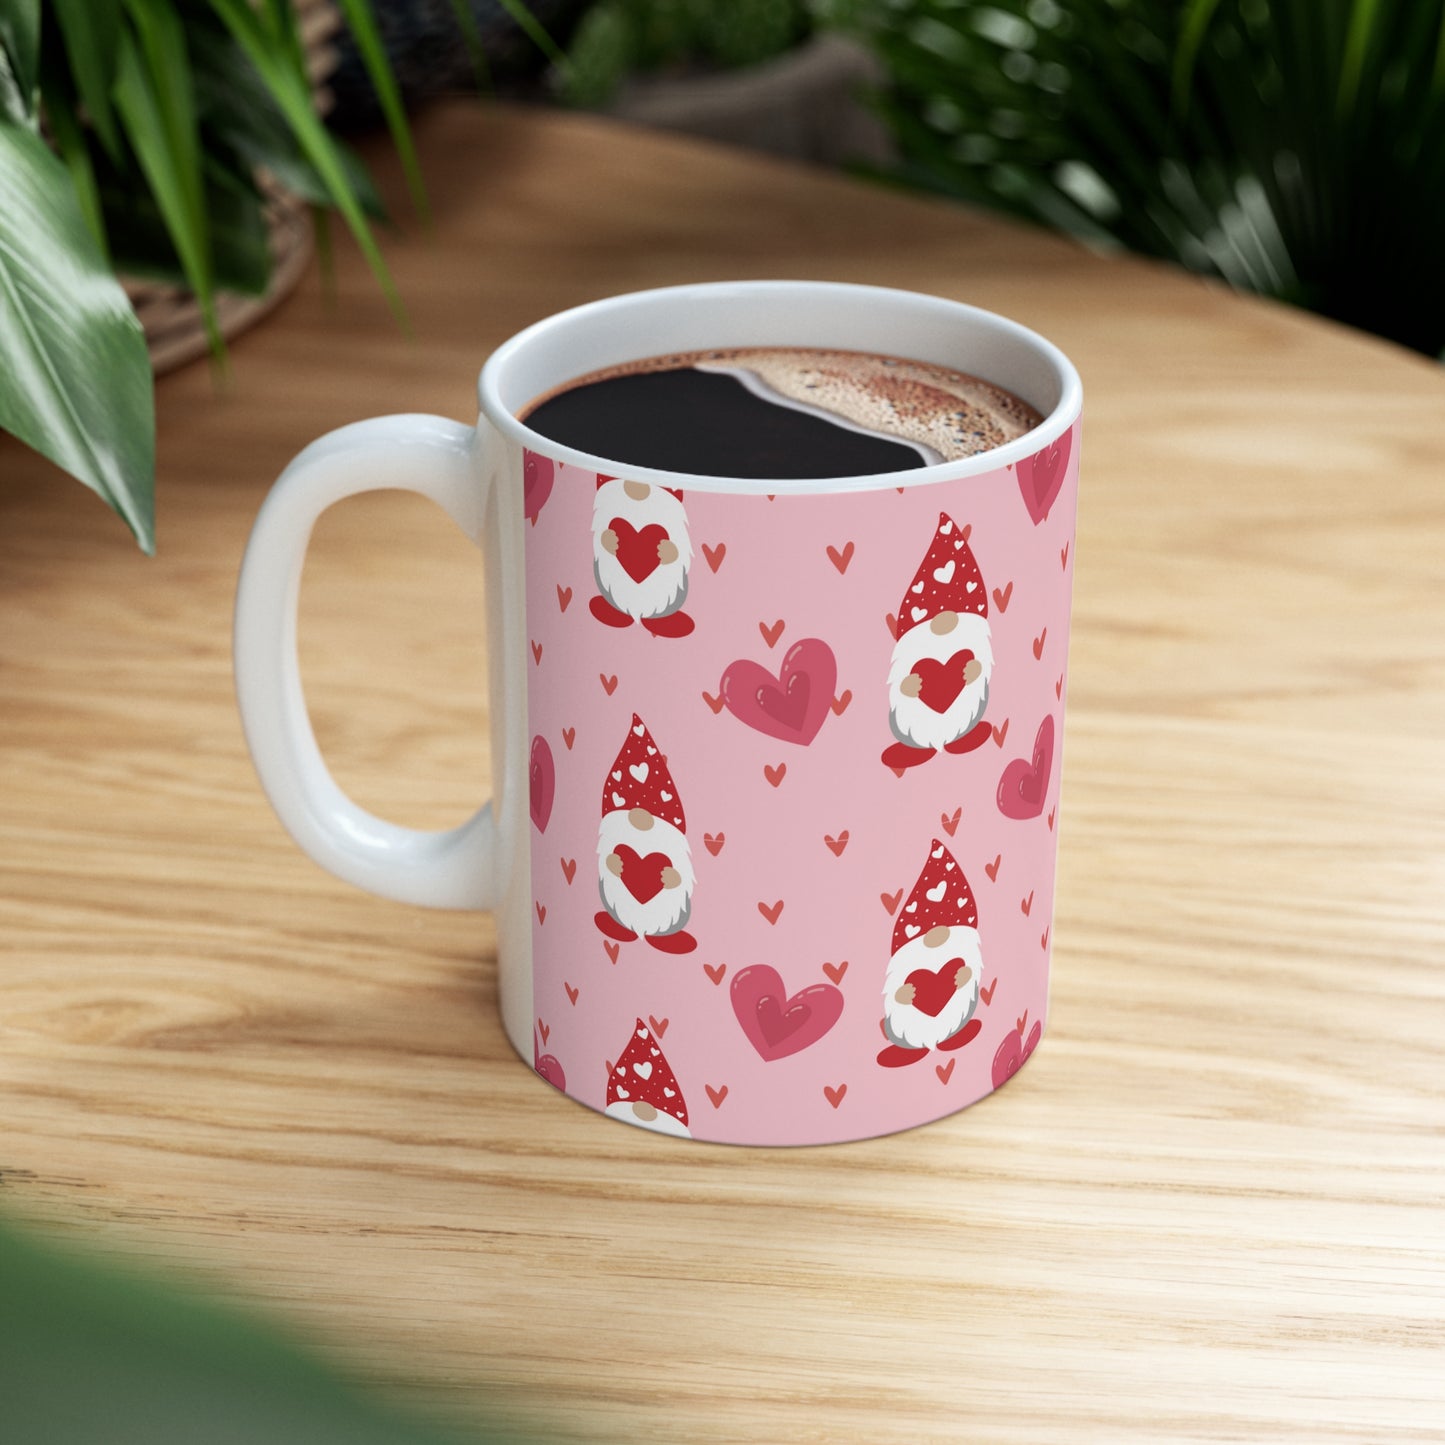 Gnome Hearts Ceramic Mug 11oz